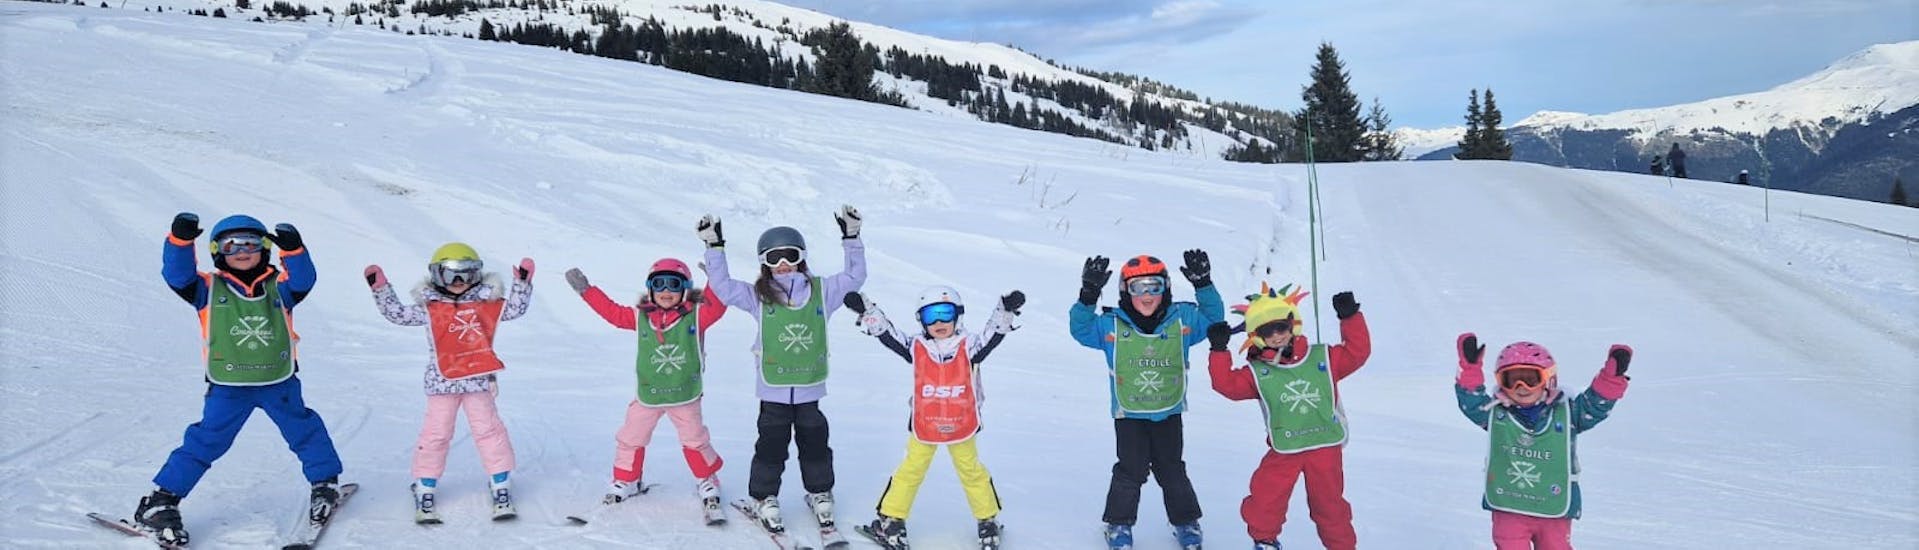 Lezioni di sci per bambini "Club Piou-Piou" (3-5 anni).